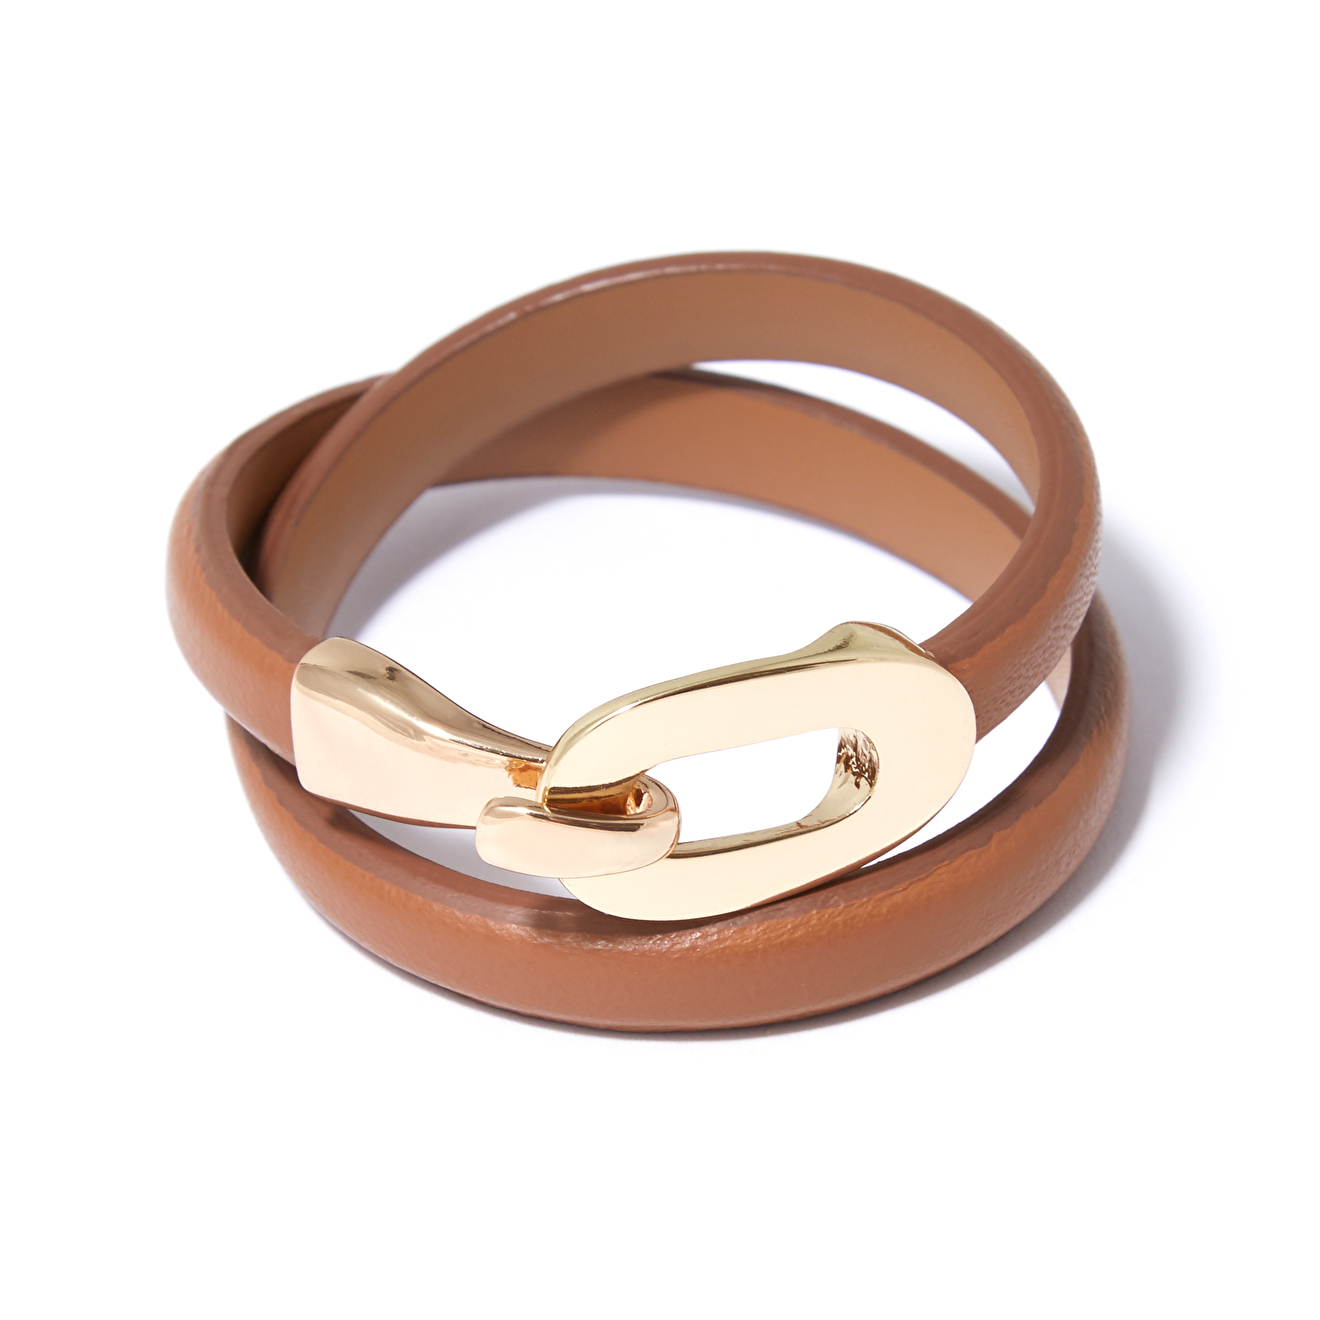 Tannum Коричневый кожаный браслет с пряжкой tannum бежевый кожаный браслет с золотистым квадратом